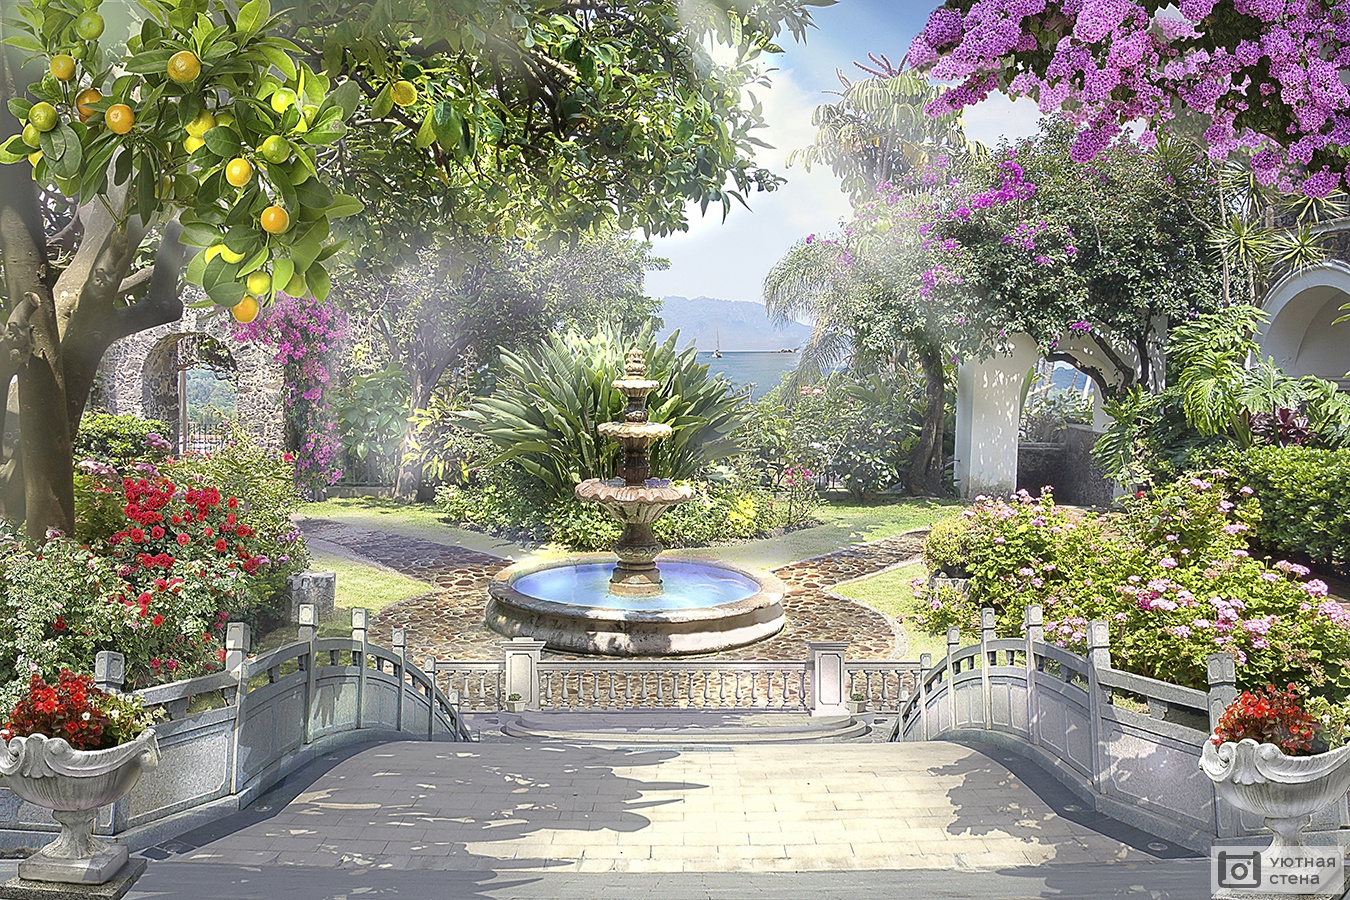 Фонтан в саду: устройство и обслуживание. Установка фонтаны для сада на даче.